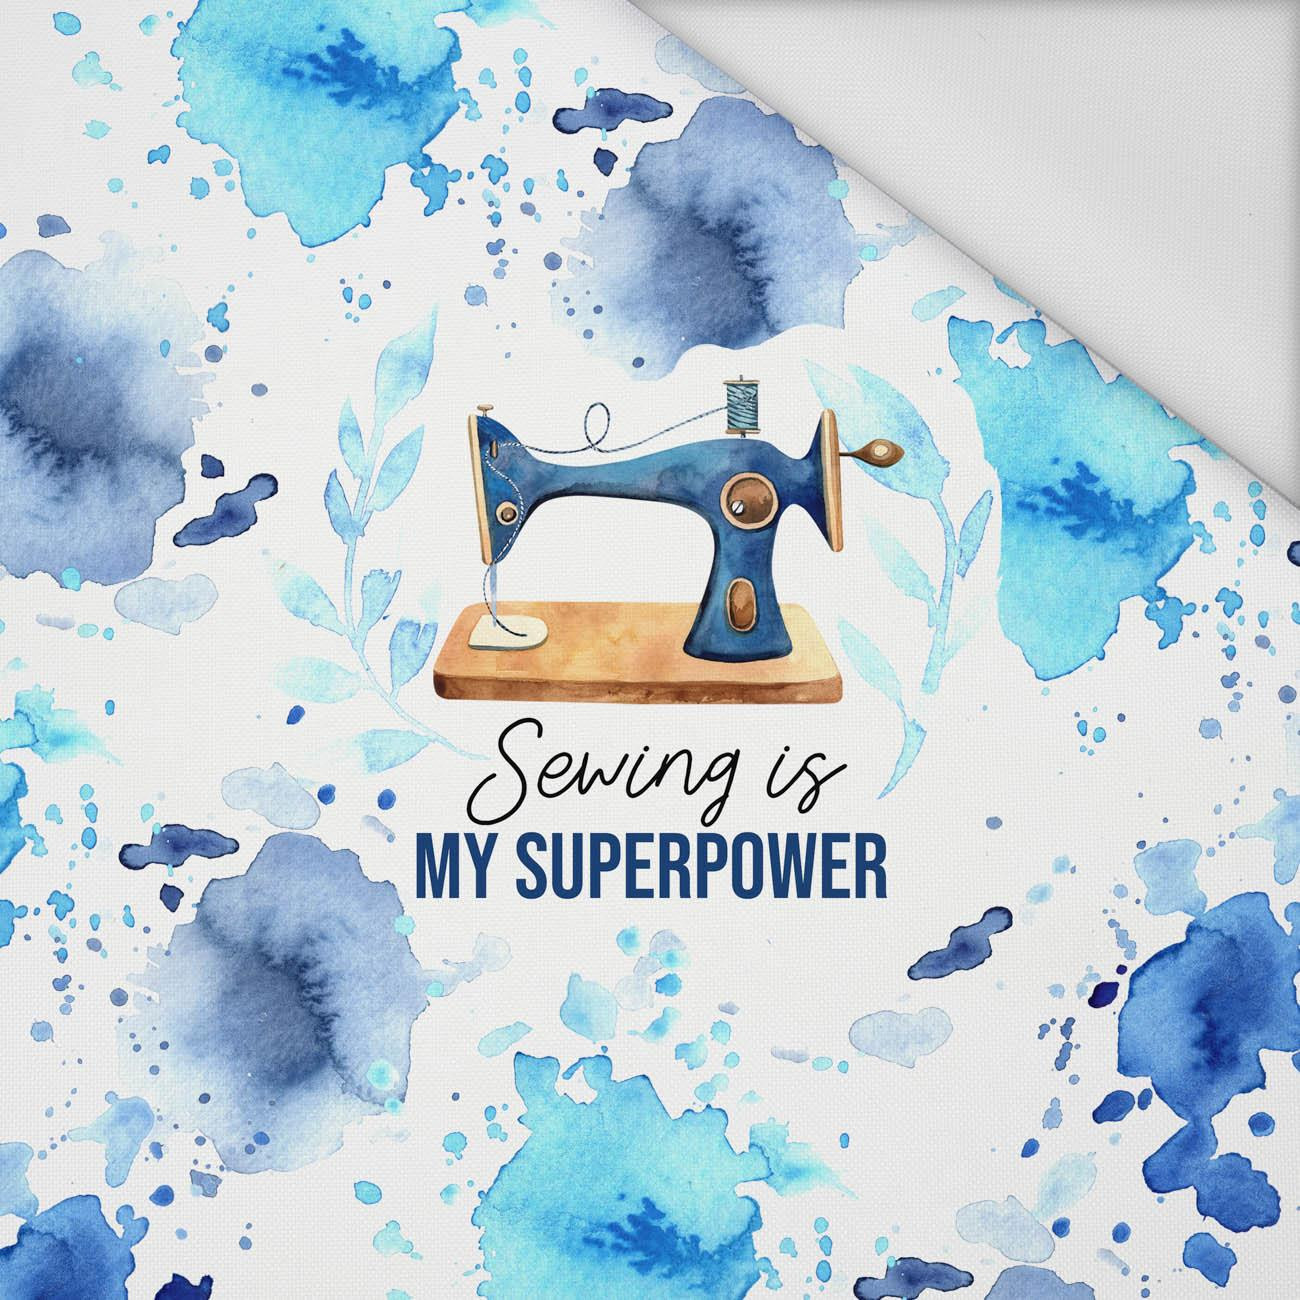 SEWING IS MY SUPERPOWER - Paneel (75cm x 80cm) Wasserabweisende Webware